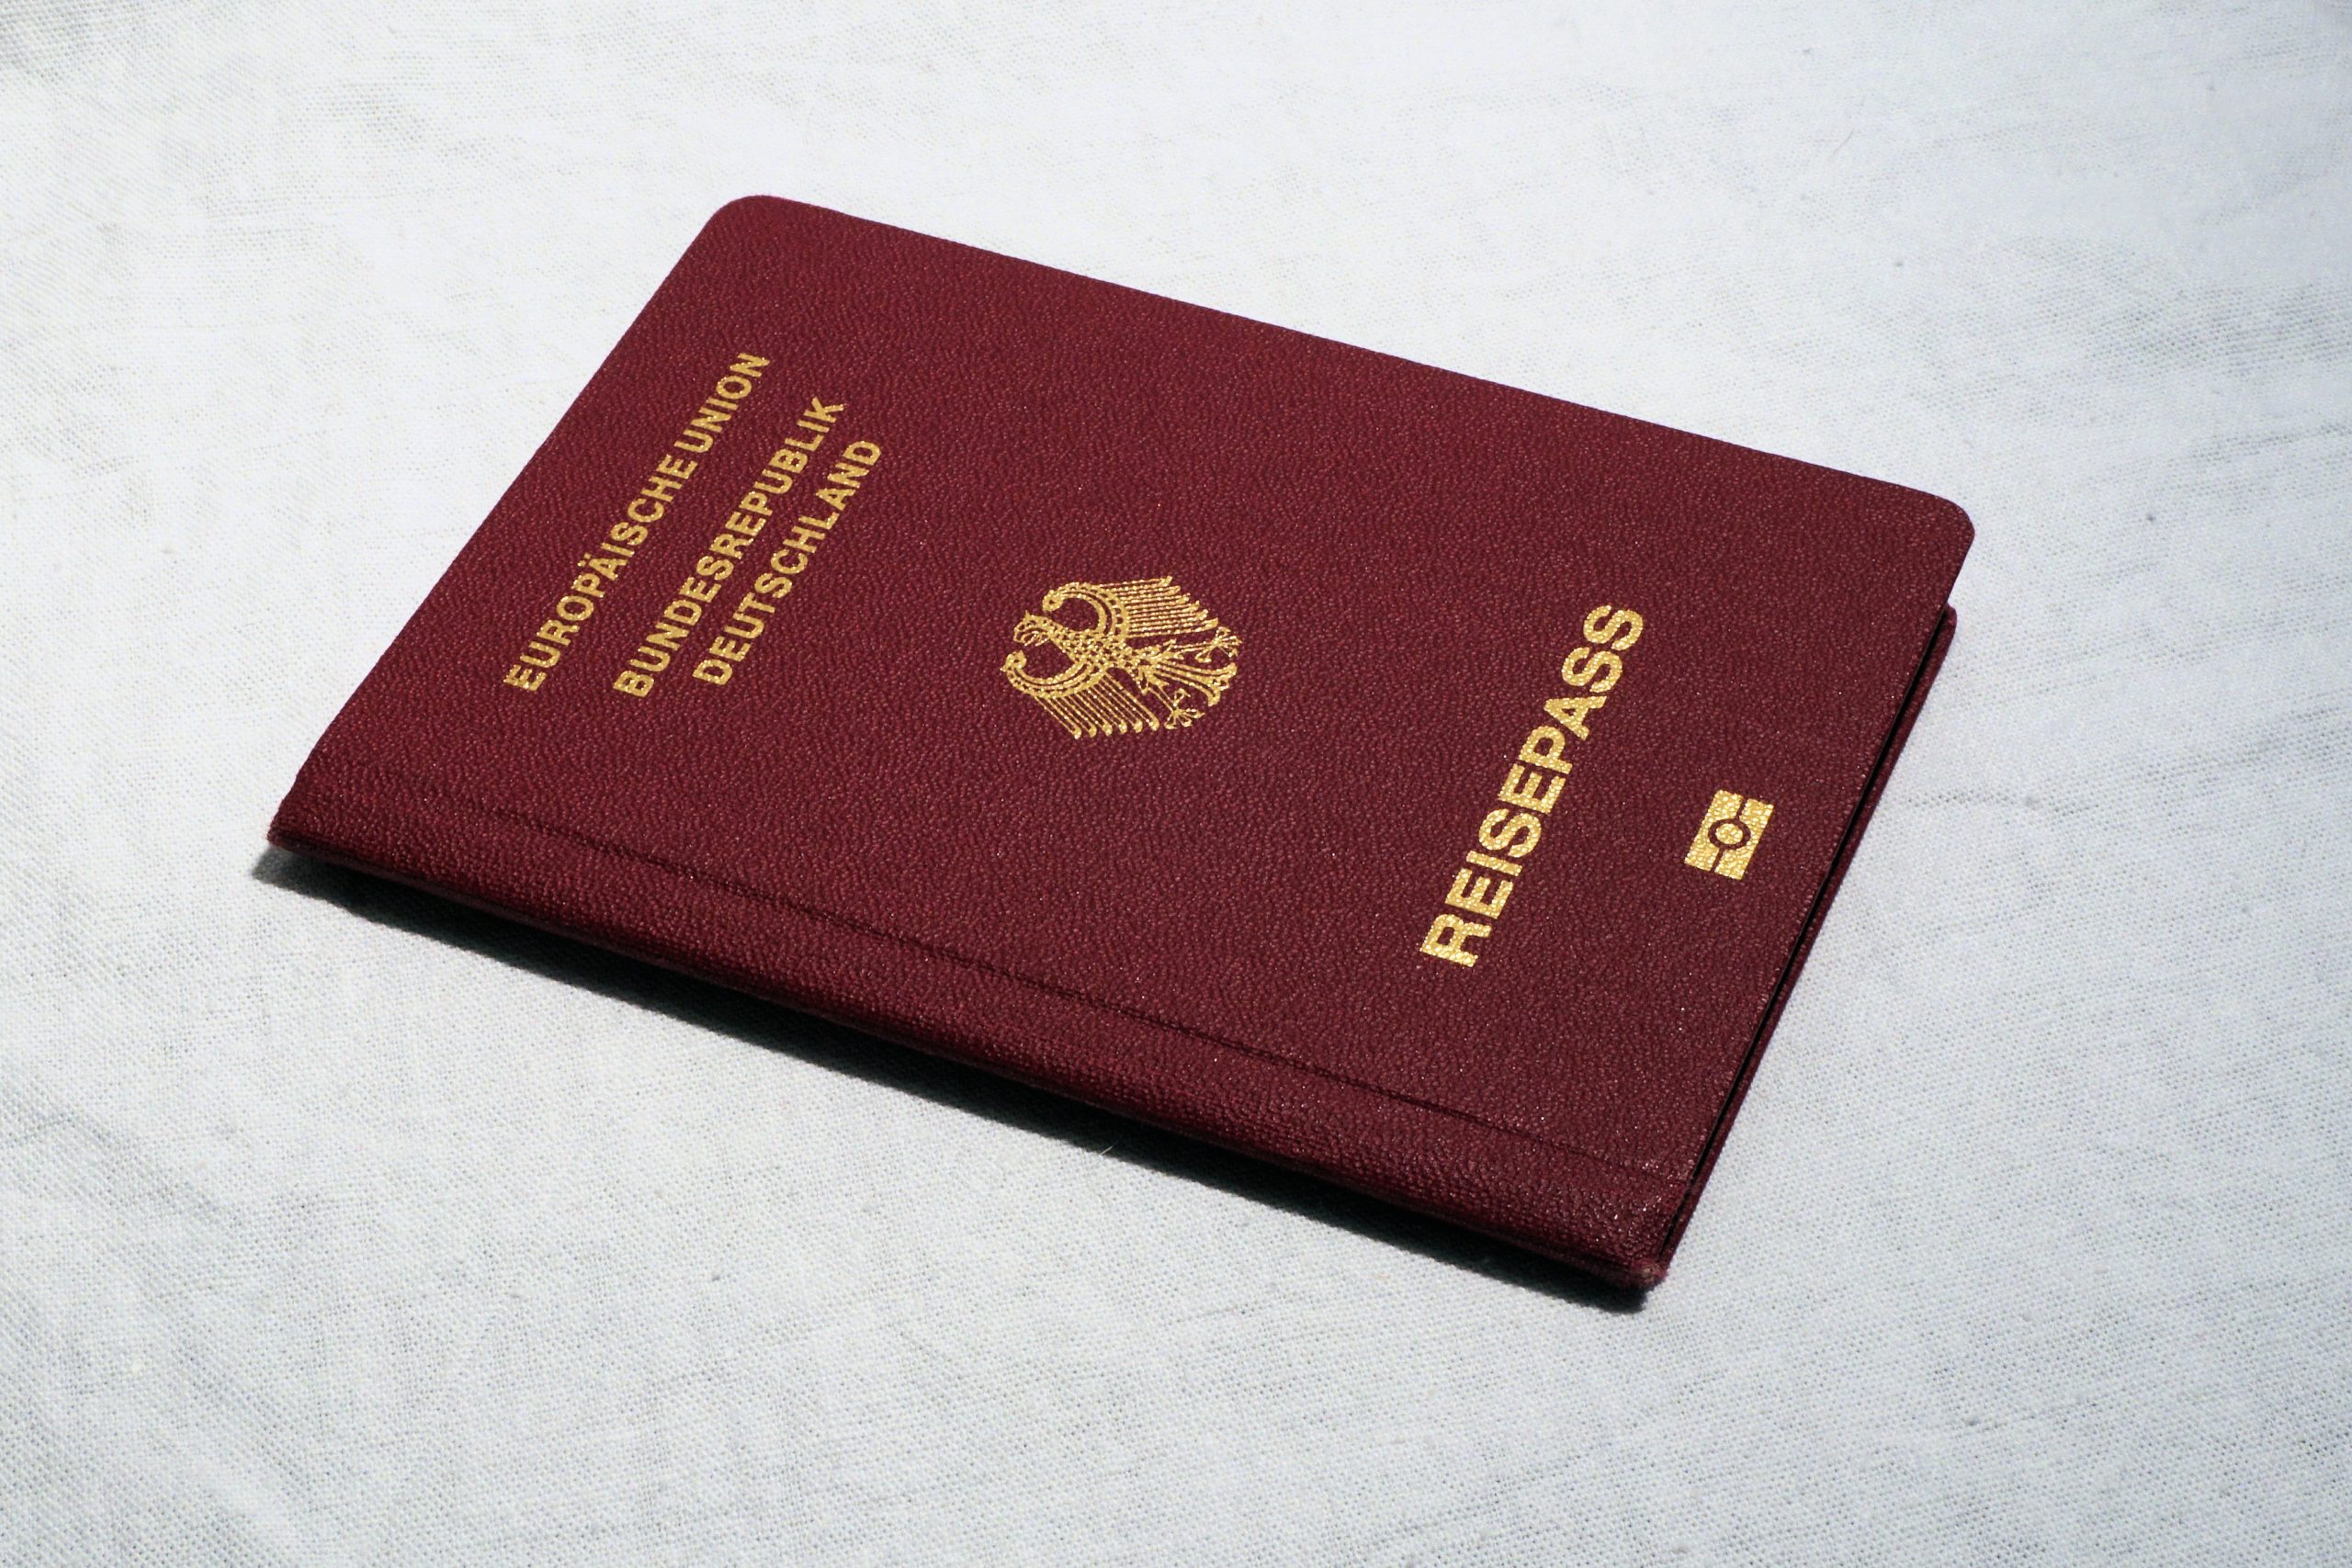 Reisepass als Ausweisdokument